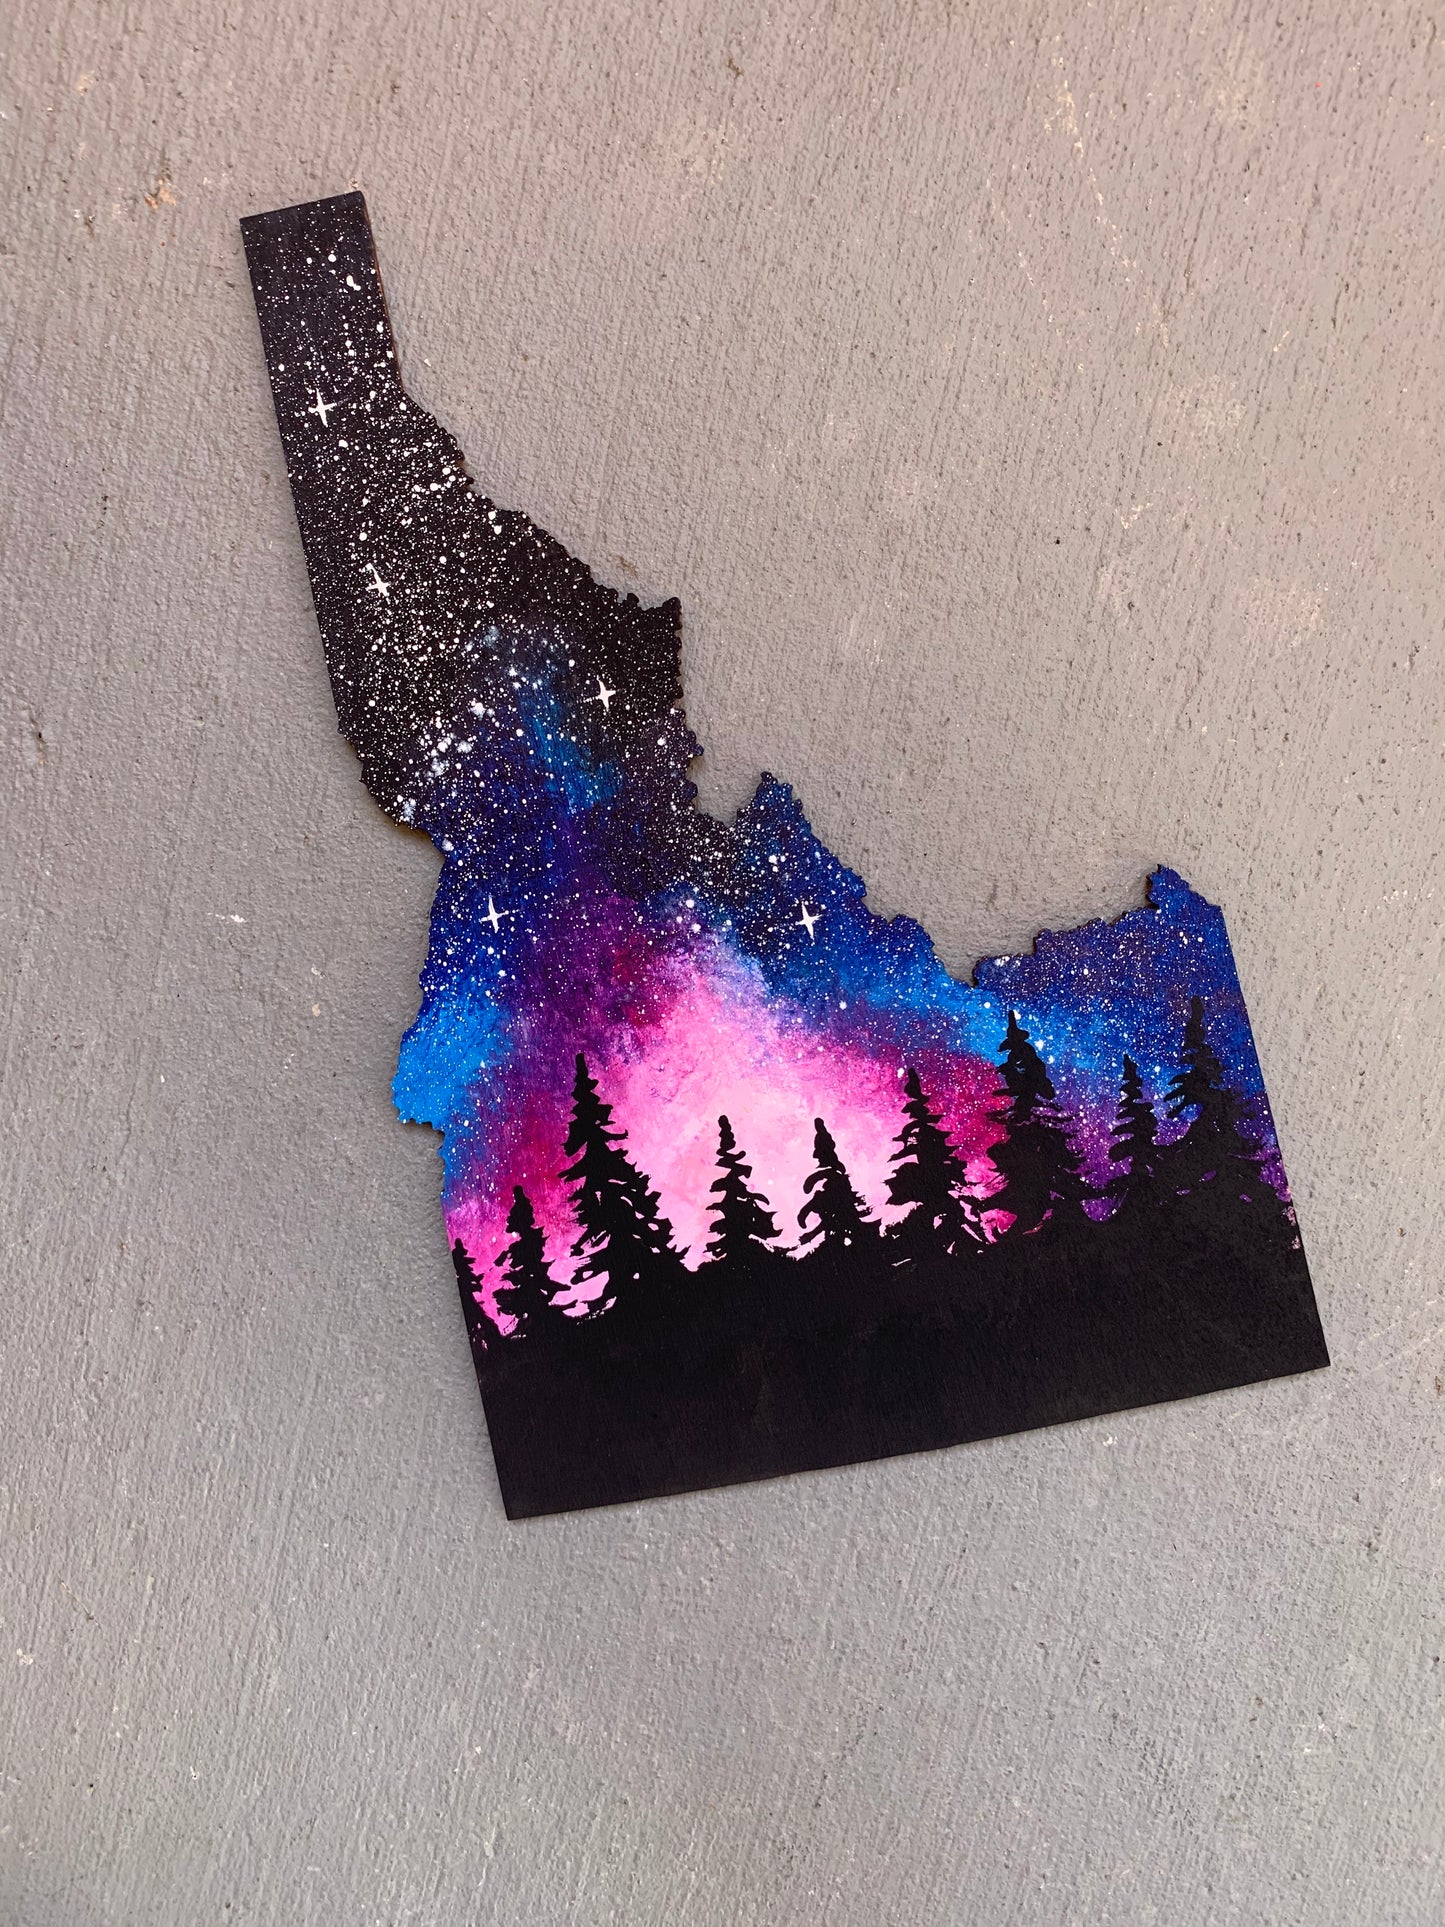 Idaho galaxy wood cutout painting